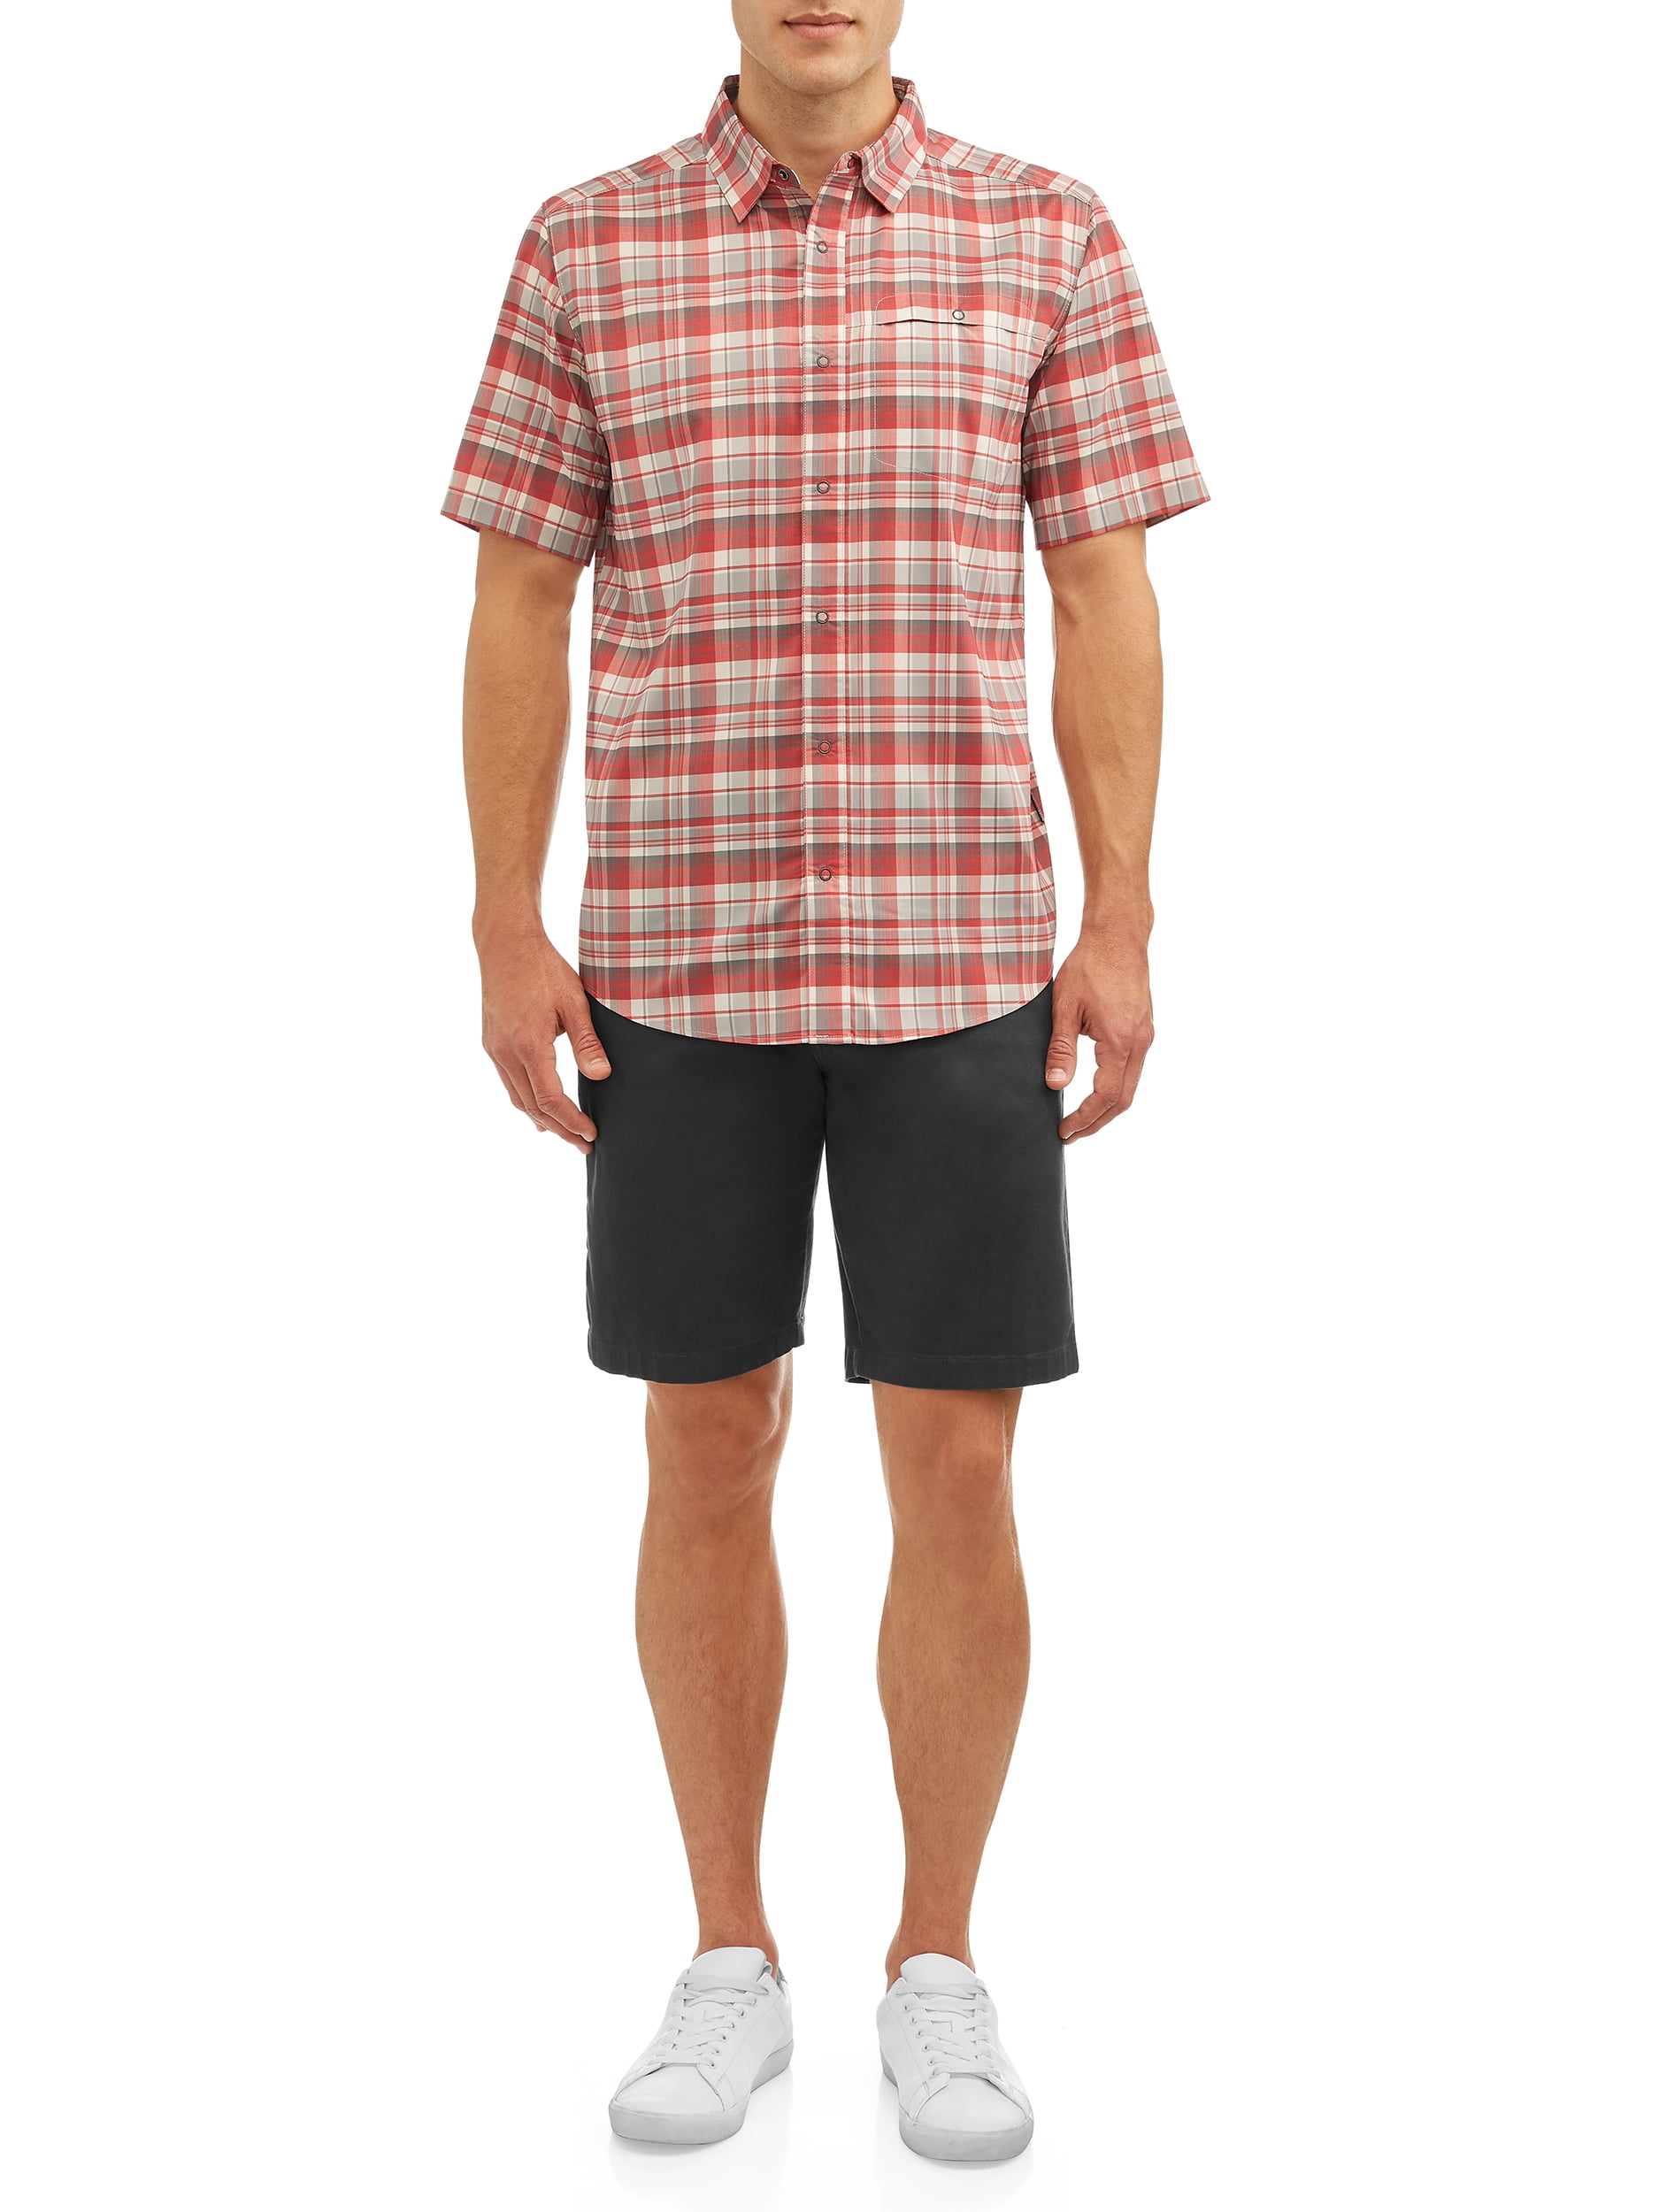 Swiss Tech Men’s Short Sleeve Outdoor Shirt